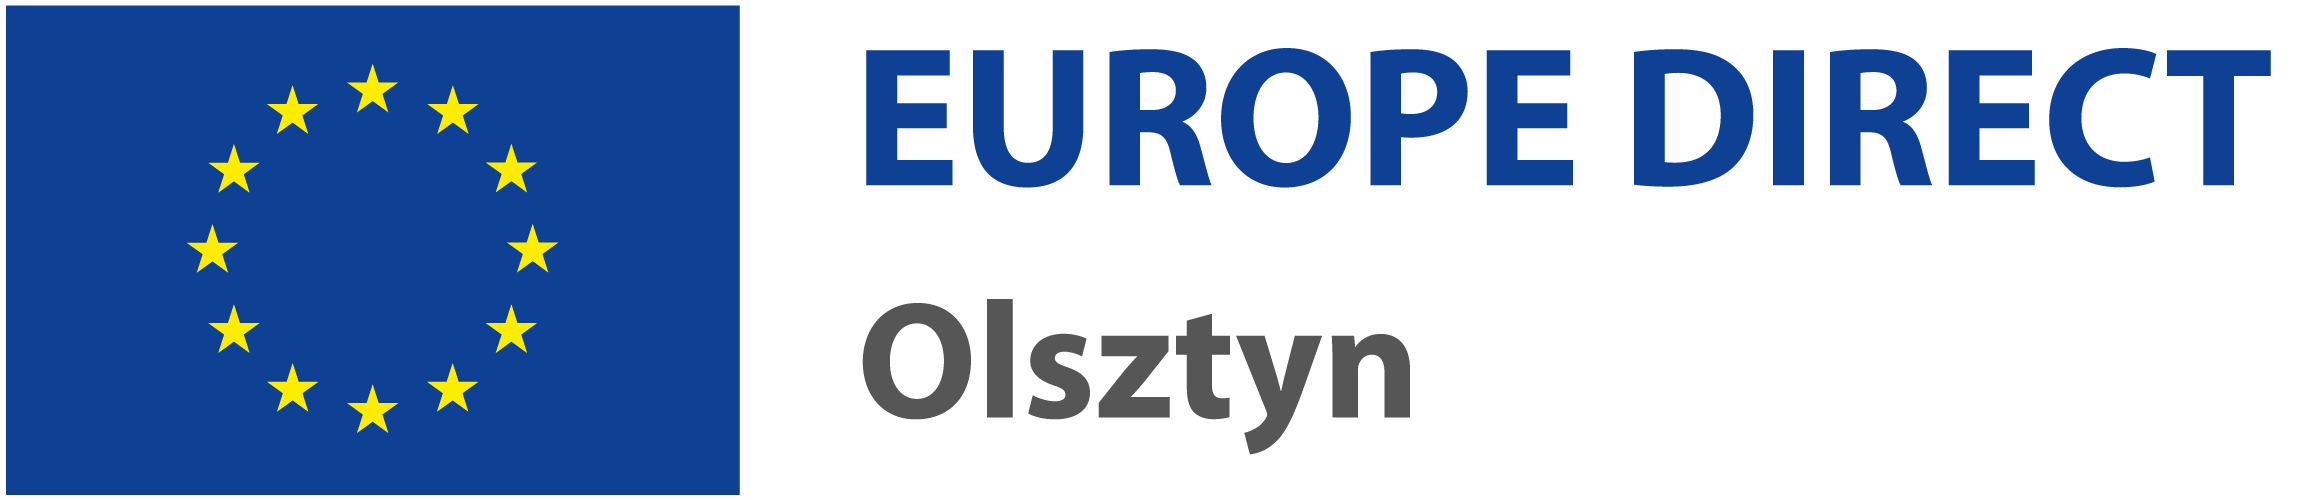 EUROPE DIRECT Olsztyn